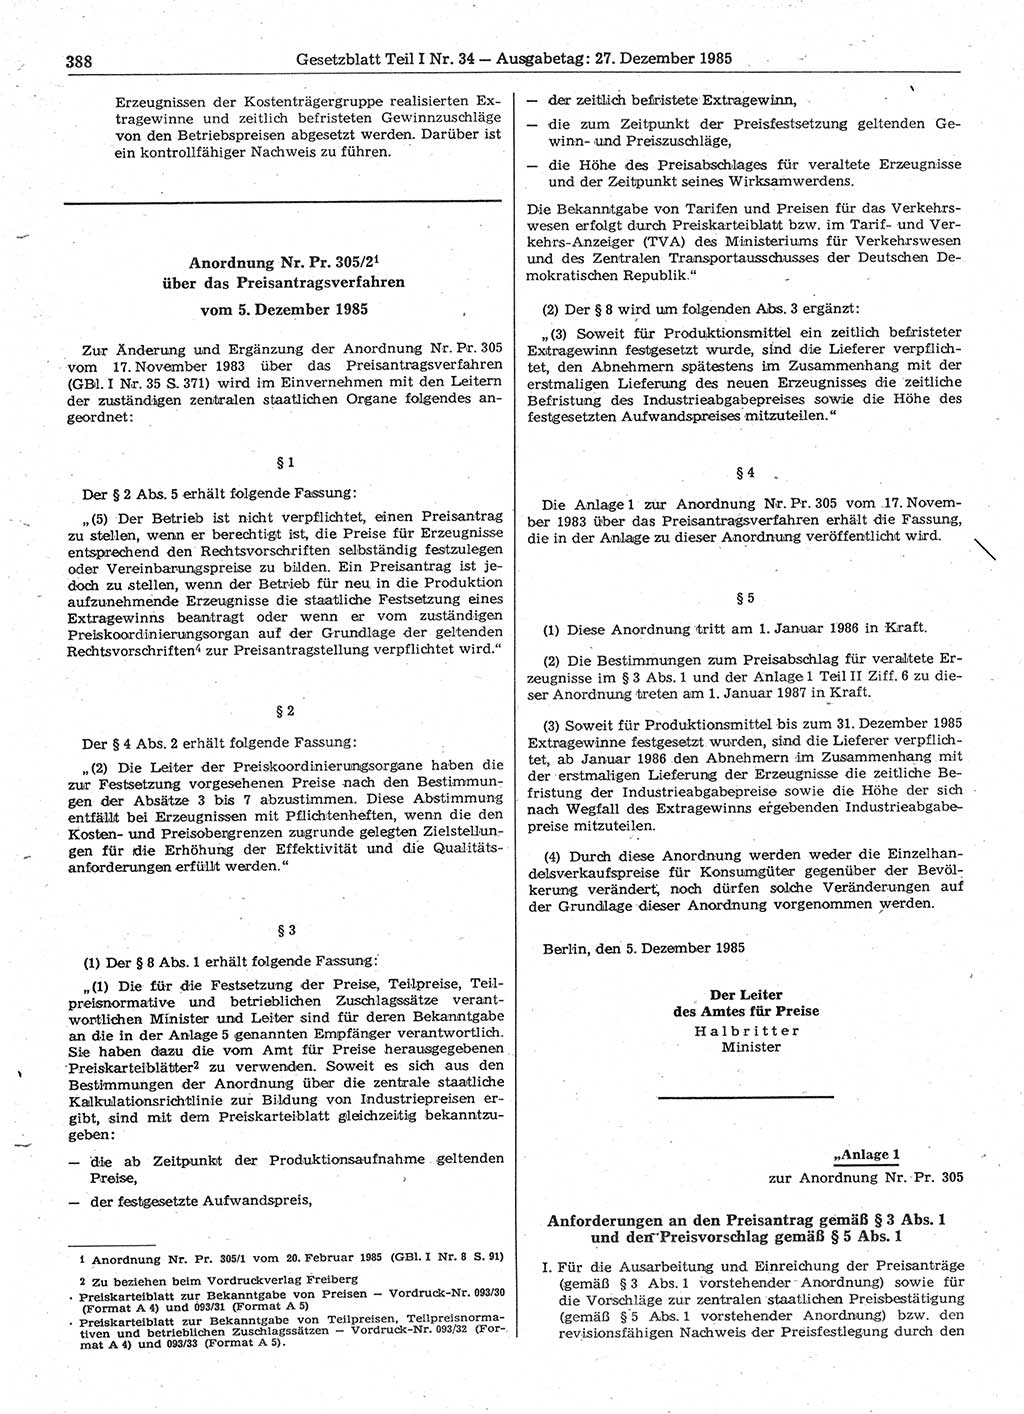 Gesetzblatt (GBl.) der Deutschen Demokratischen Republik (DDR) Teil Ⅰ 1985, Seite 388 (GBl. DDR Ⅰ 1985, S. 388)